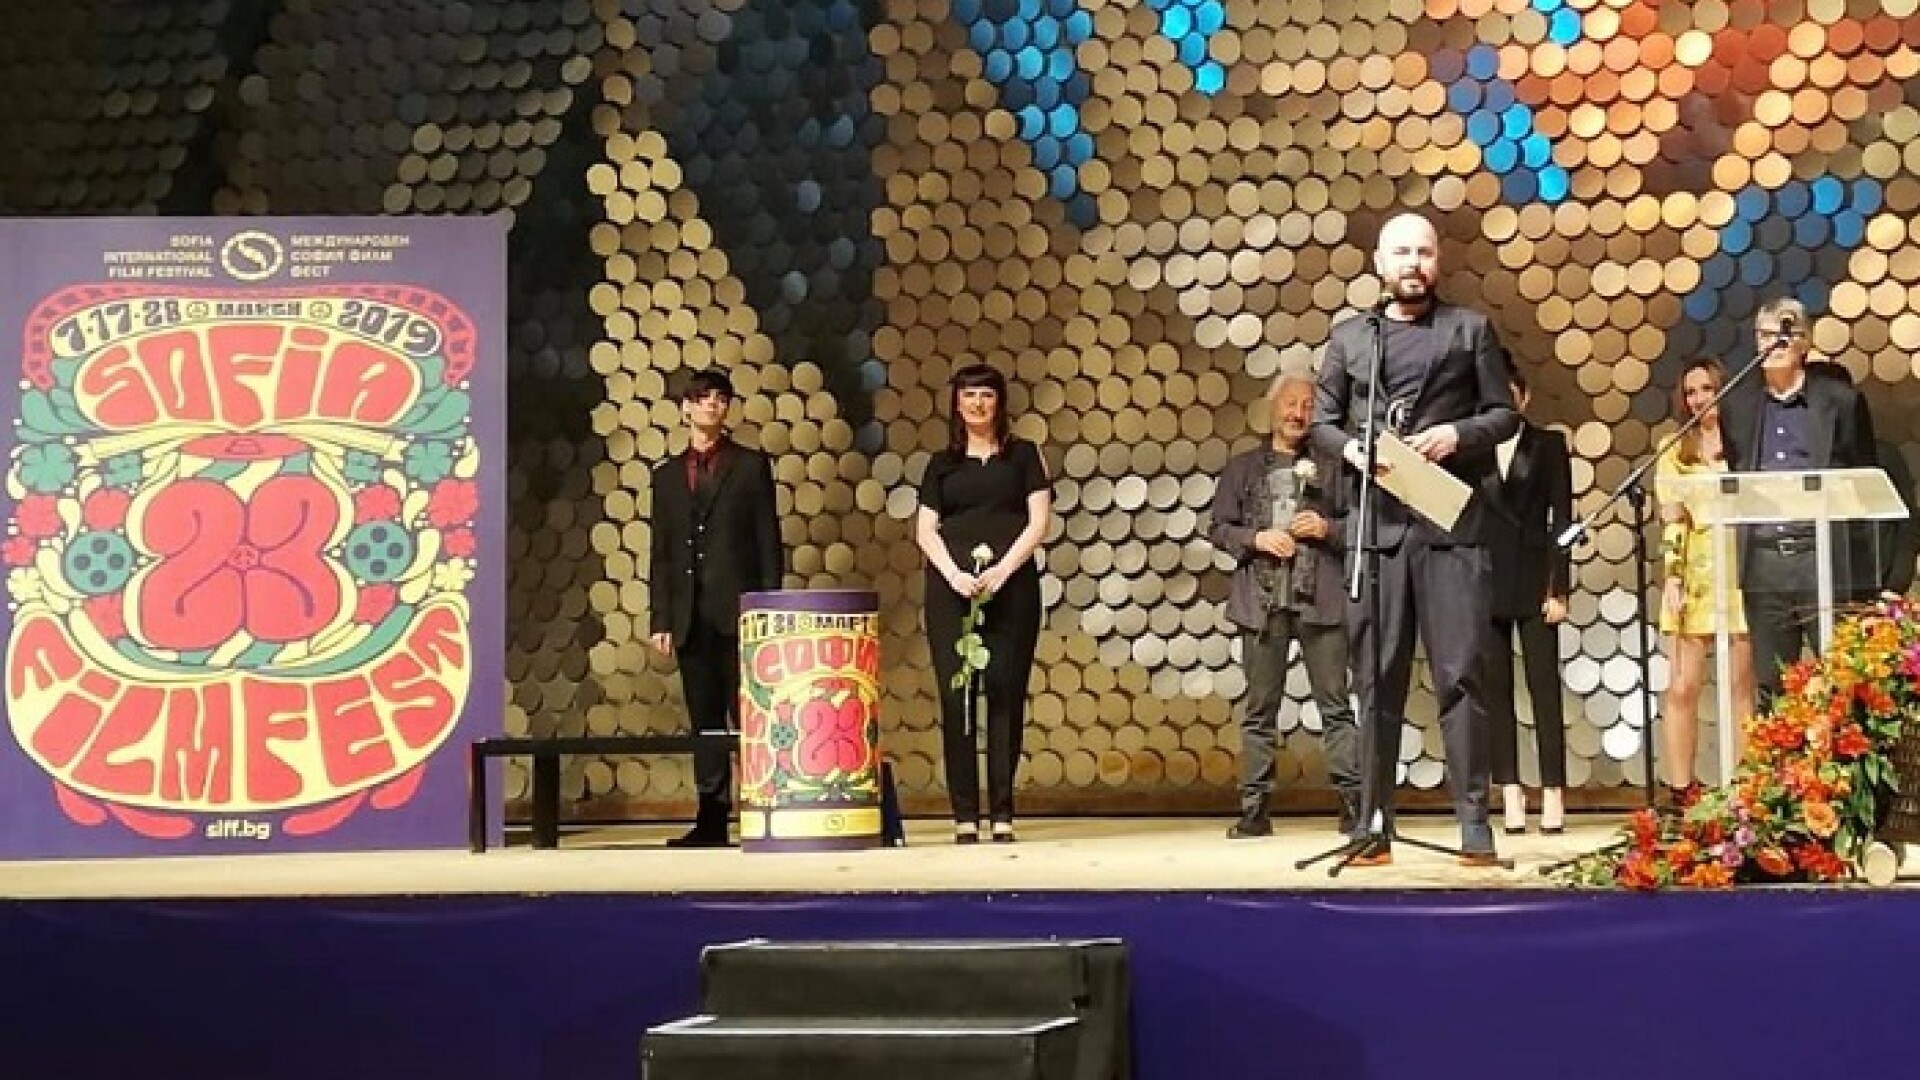 Monstri, Marius Olteanu, Festivalul de Film de la Sofia